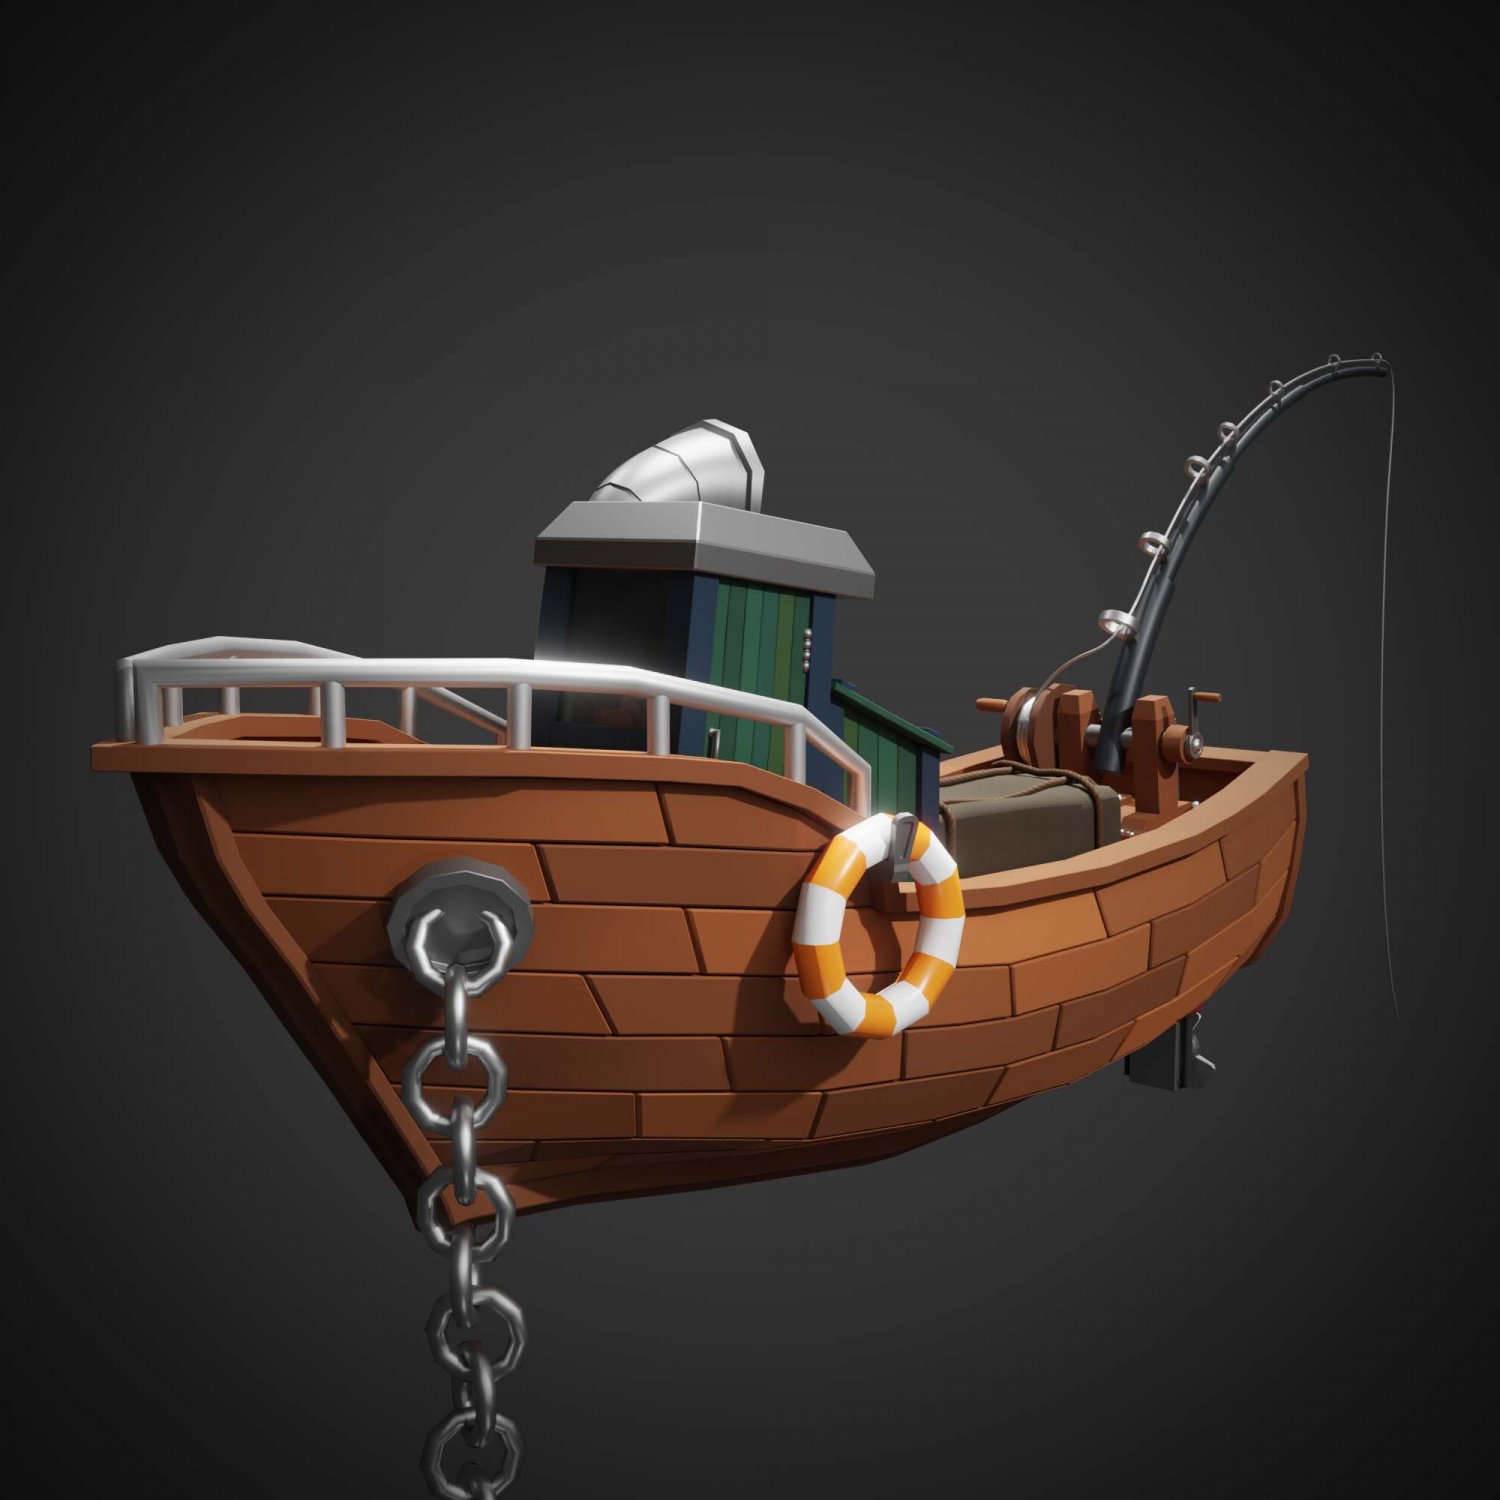 Lowpoly Cartoon Fishing Boat 3D Model in Boats 3DExport